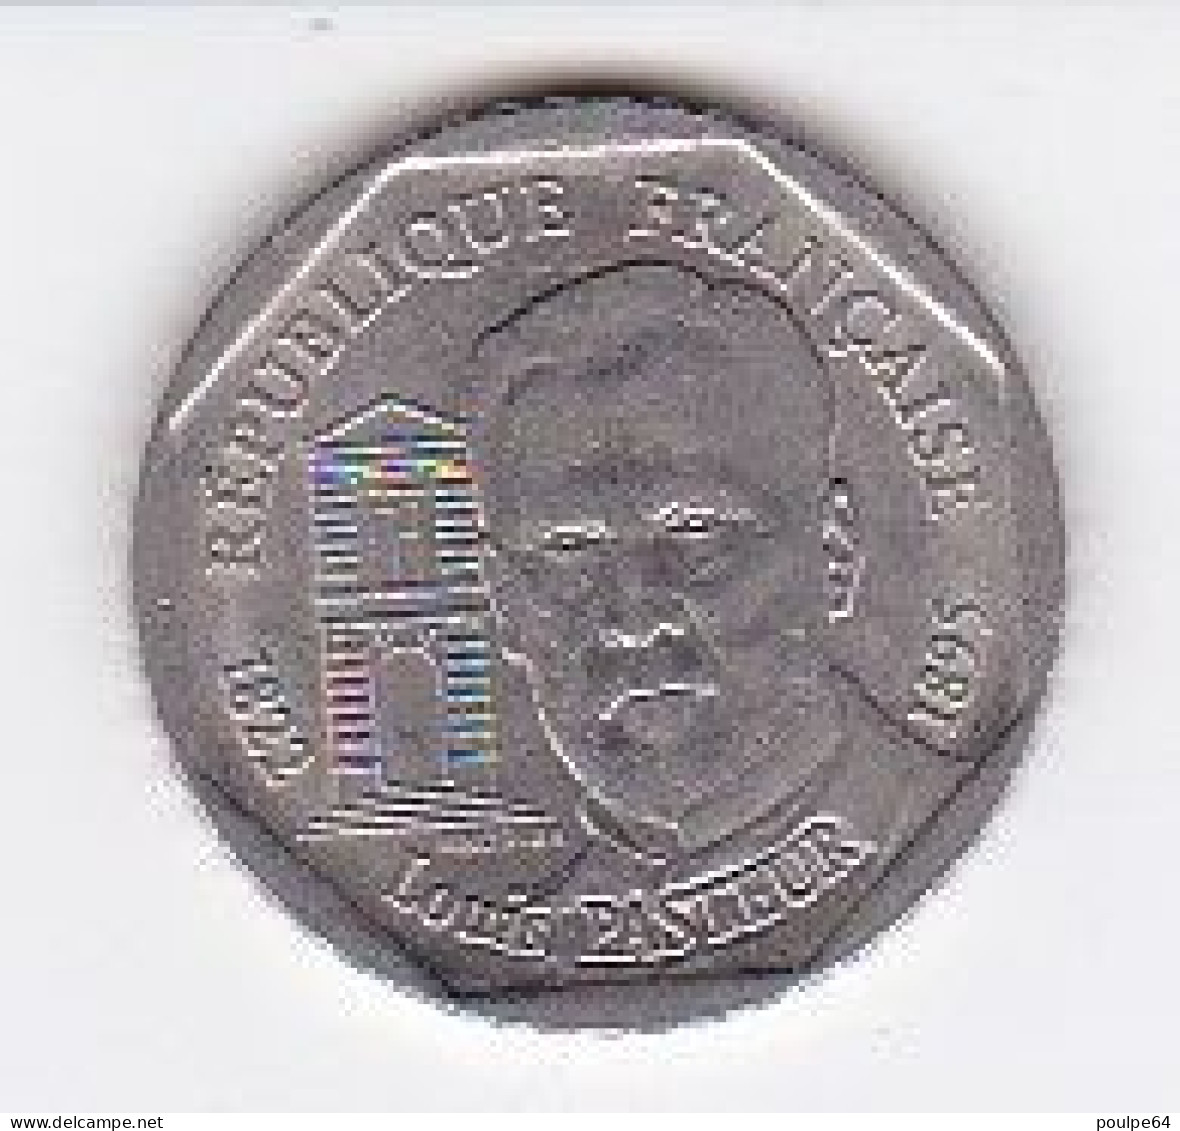 2 Francs 1995 " Louis Pasteur " - 2 Francs